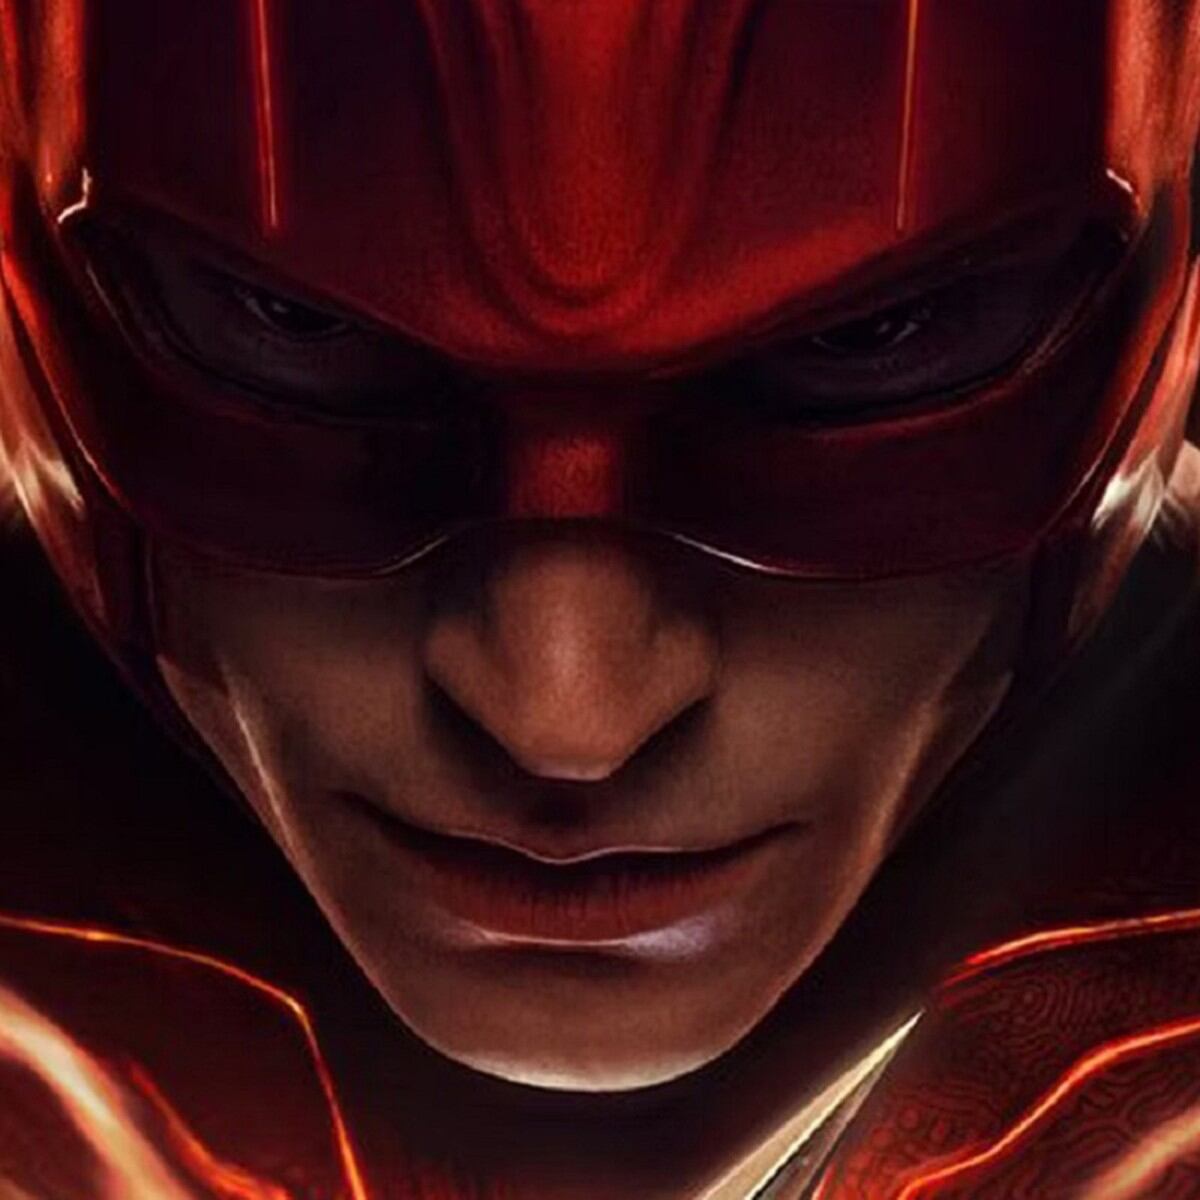 The Flash': Final explicado de la película de DC con Ezra Miller y Sasha  Calle - Noticias de cine 